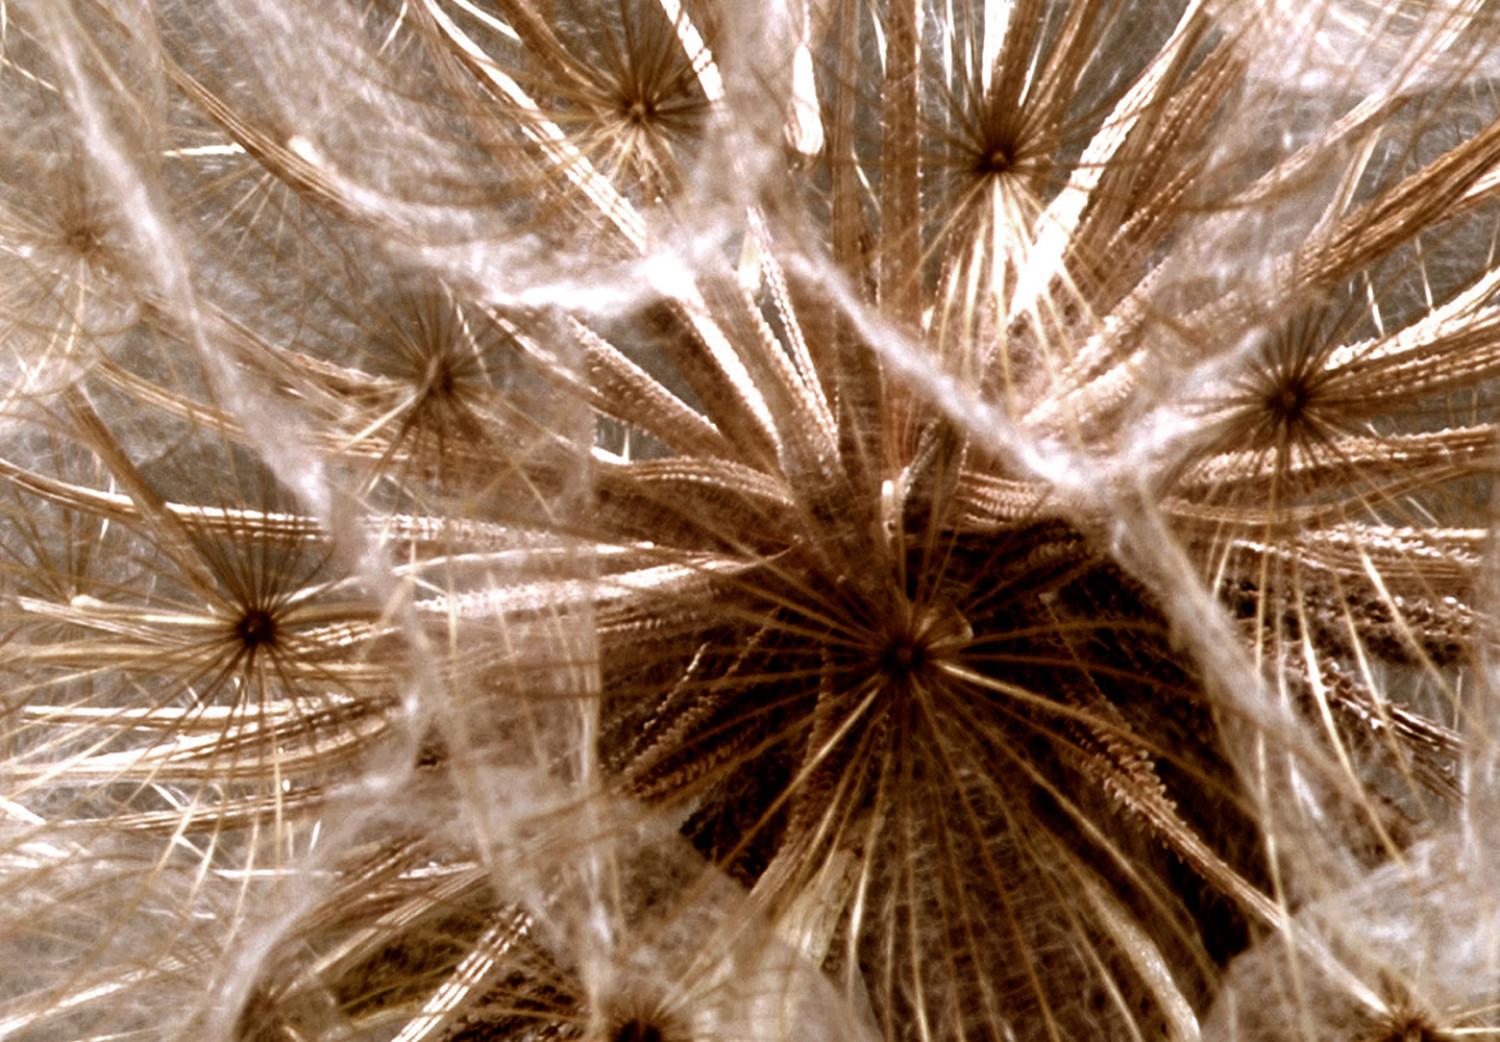 Cuadro decorativo Luz Diente León (1-parte) - semillas flor, viento